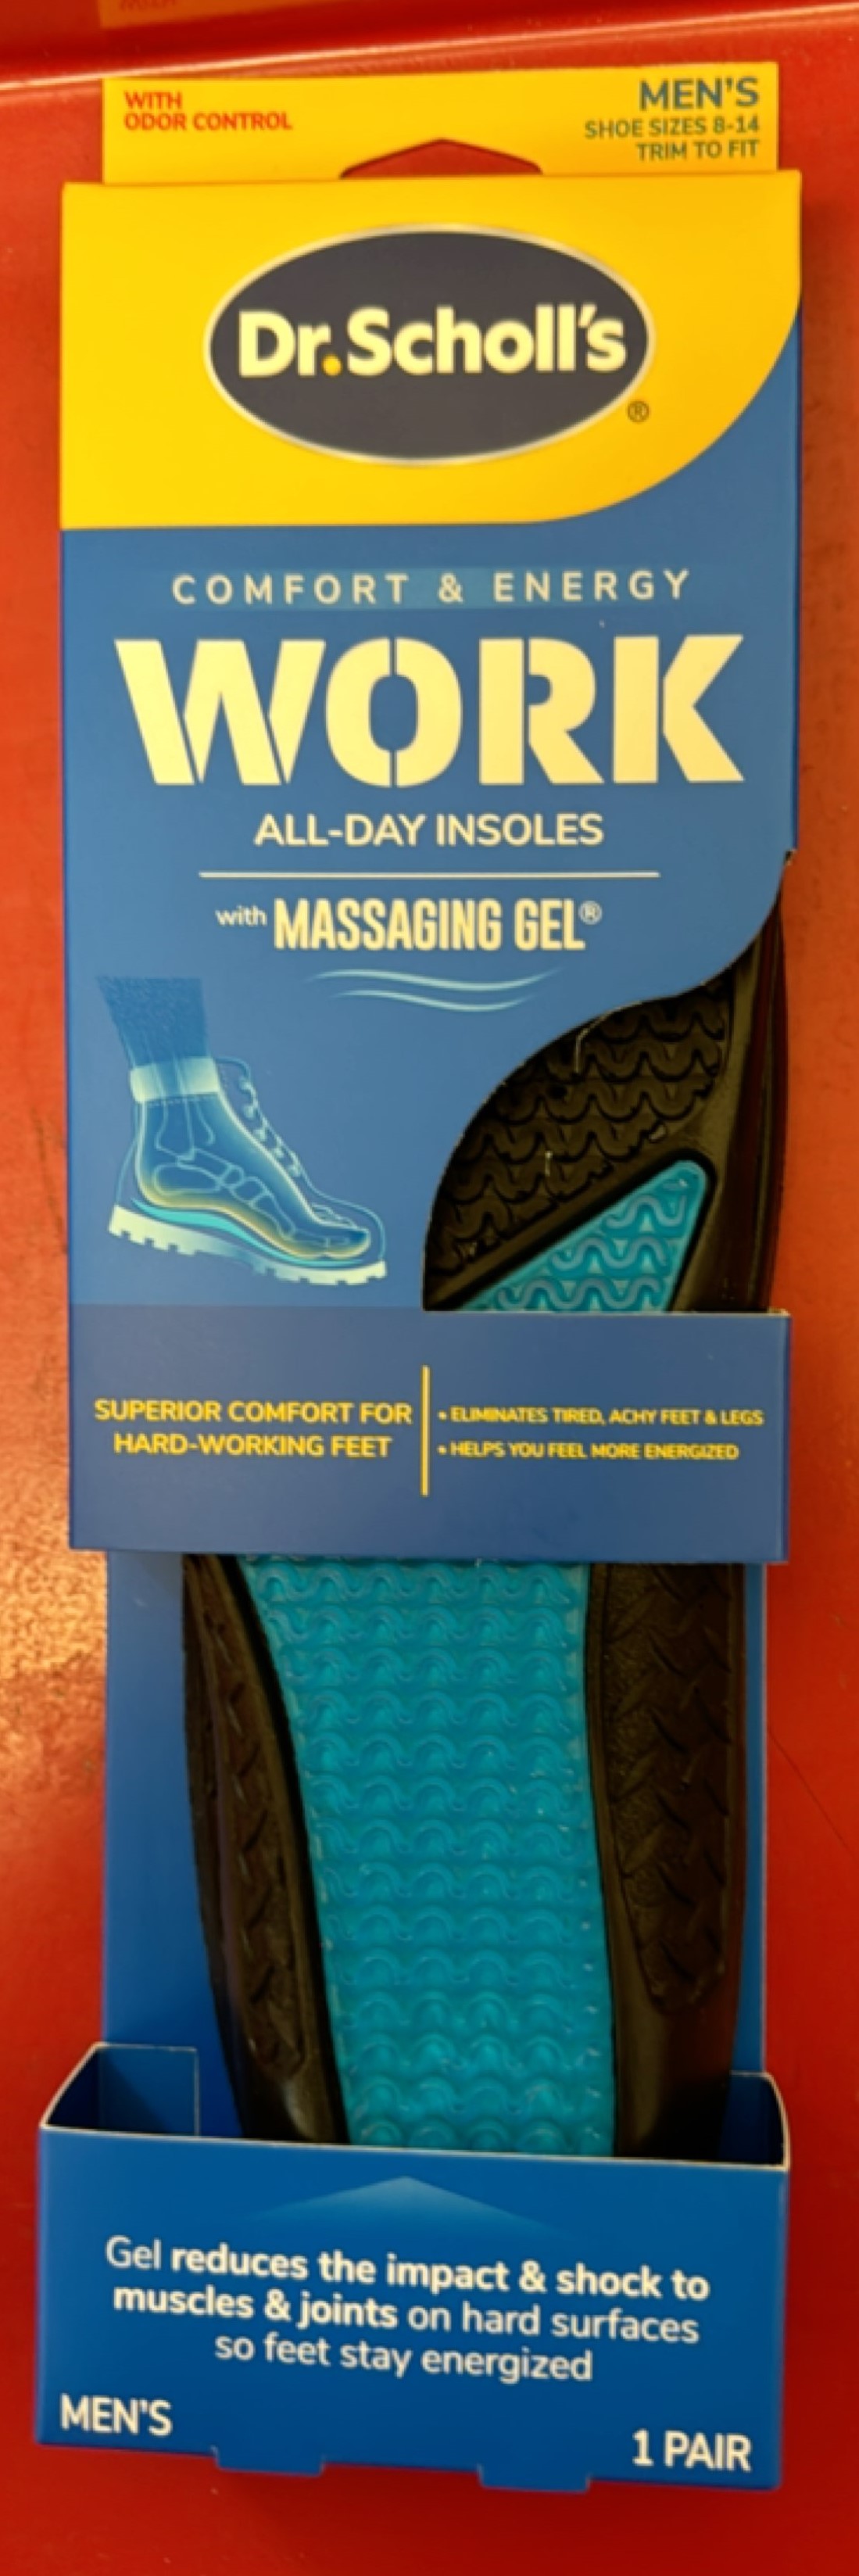 Dr. Scholls Comfort & Energy Work Massaging Gel Advan By Emerson/DR Scholls USA 